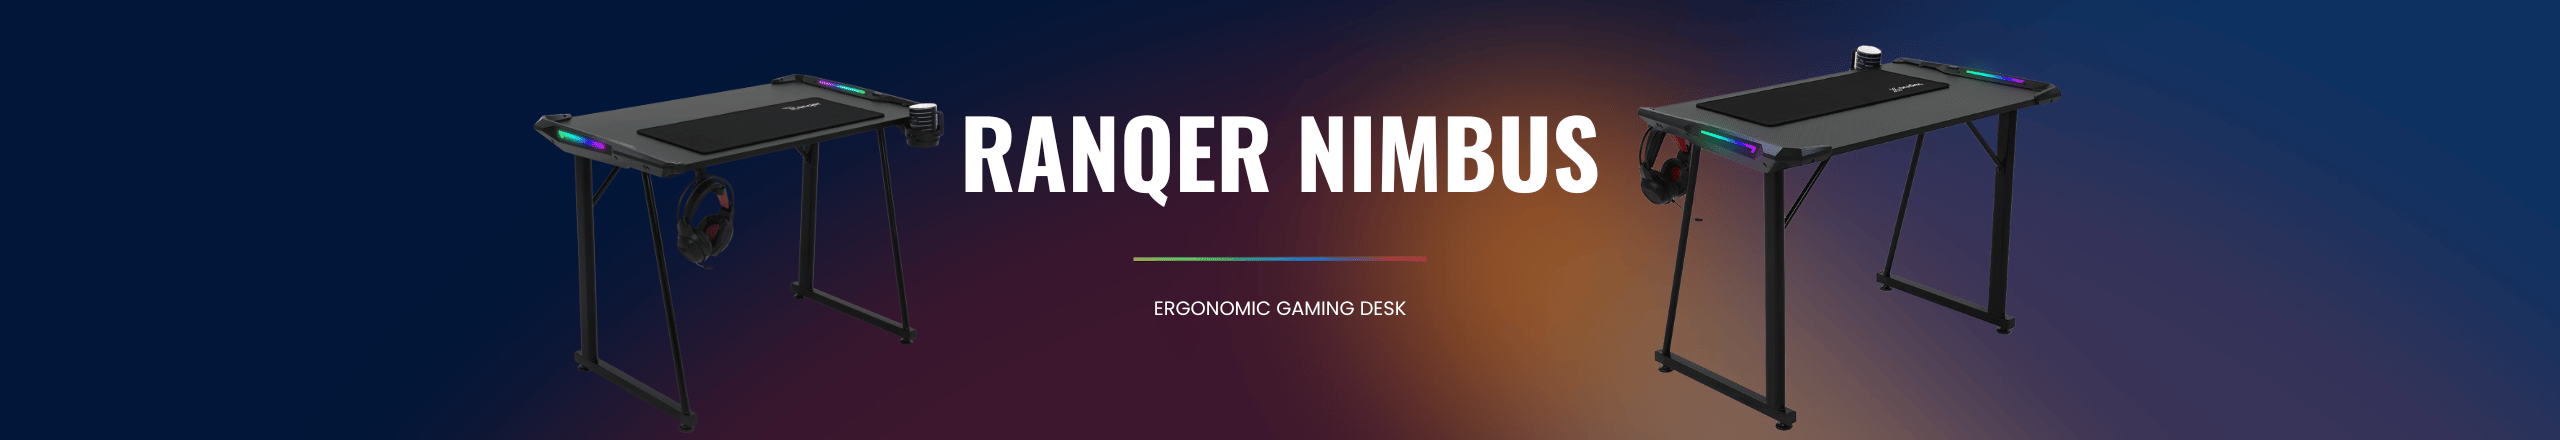 Ranqer Nimbus Gaming Desk